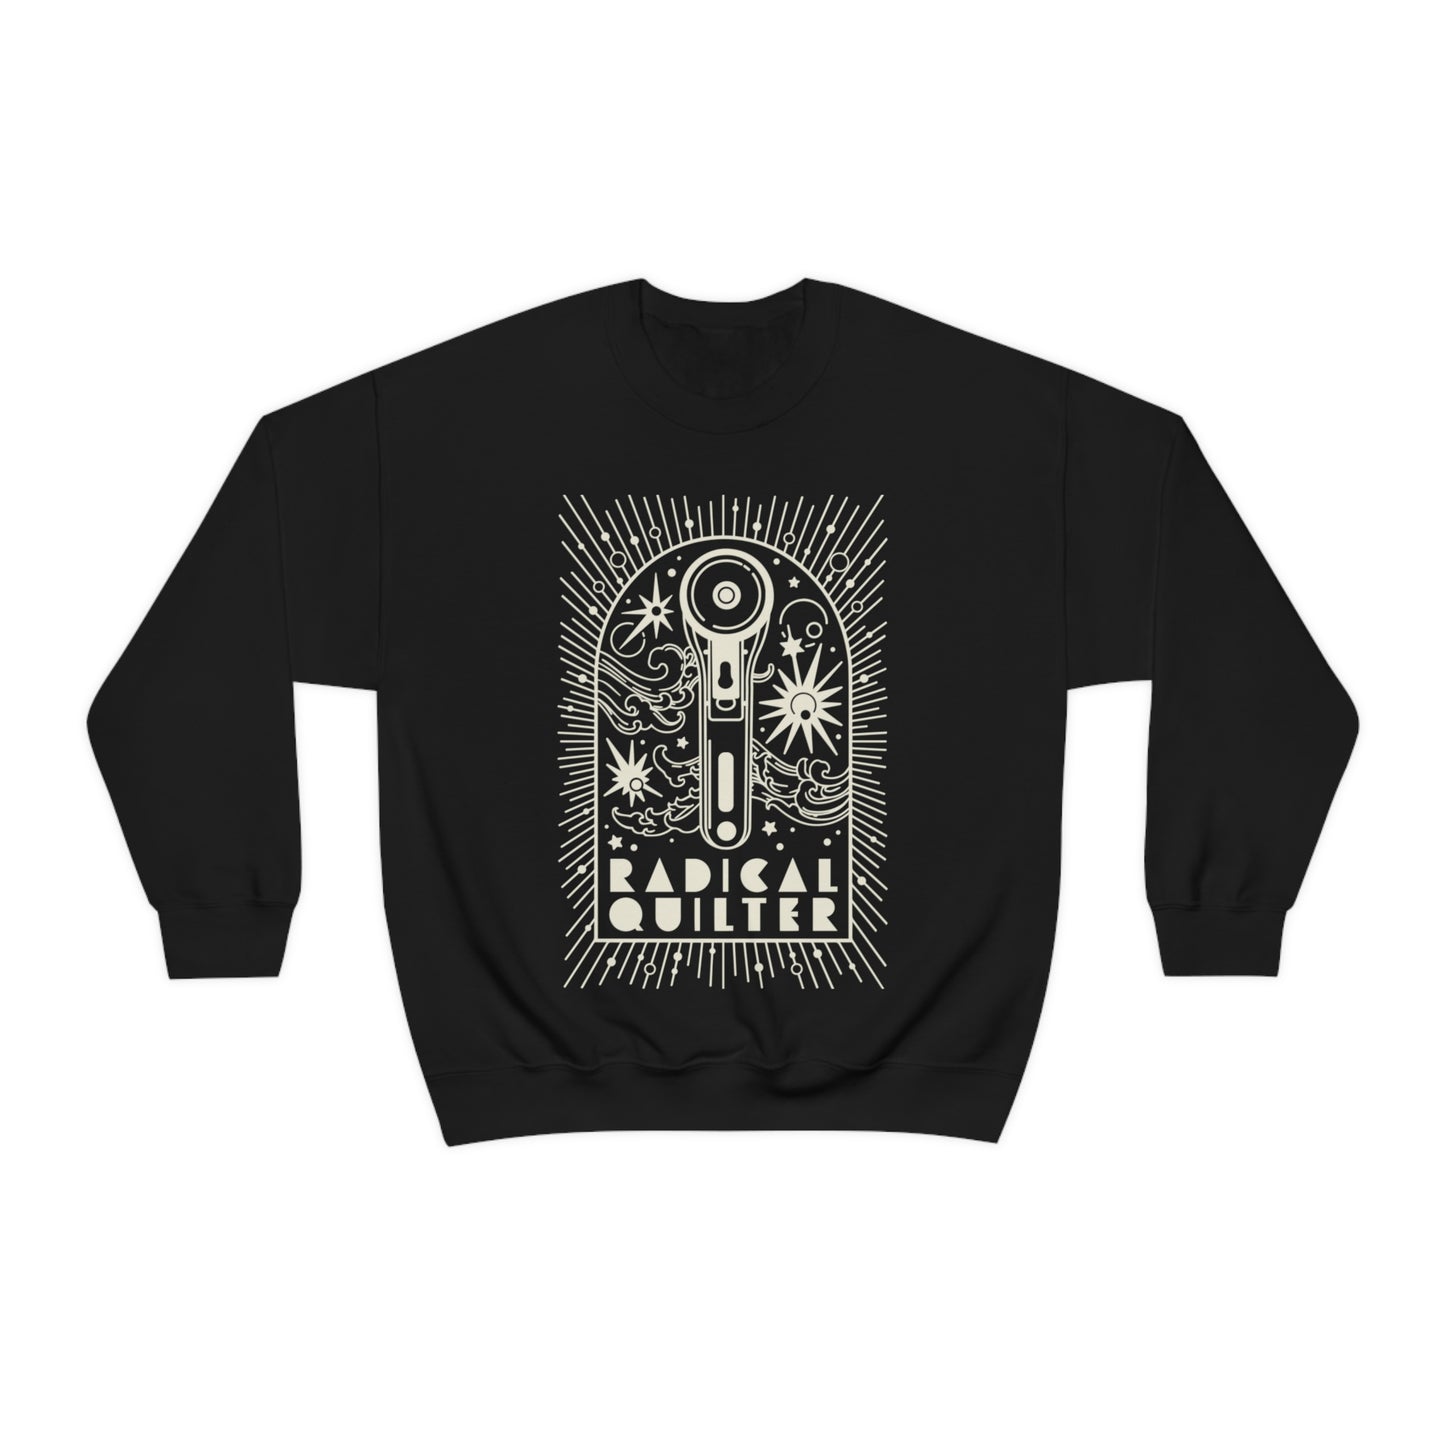 Radical Quilter Crewneck Sweatshirt (Cream Design)